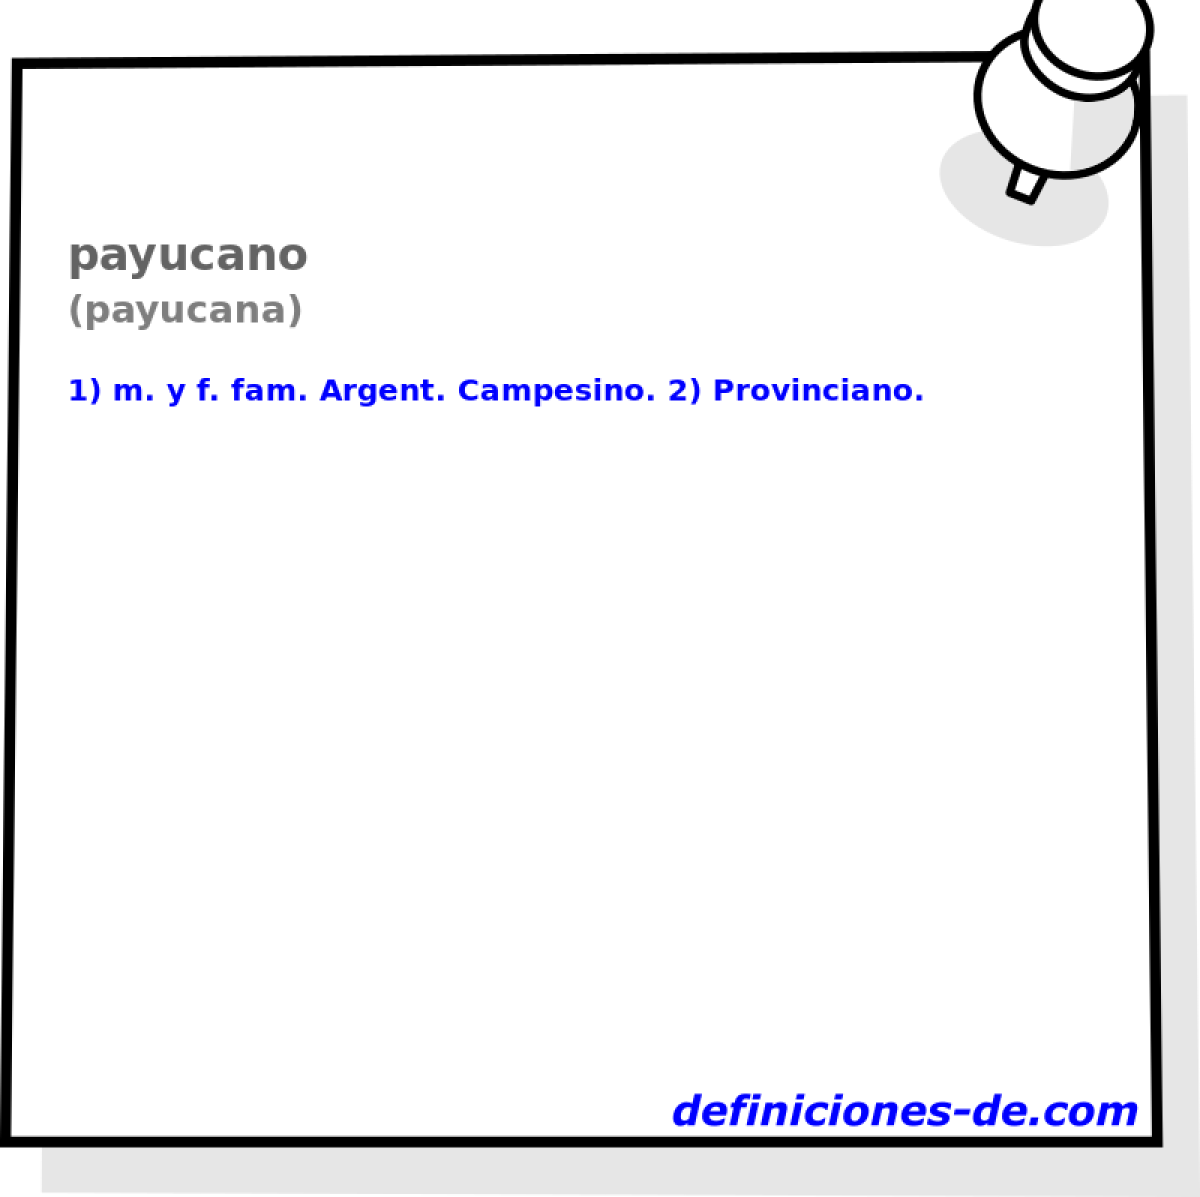 payucano (payucana)